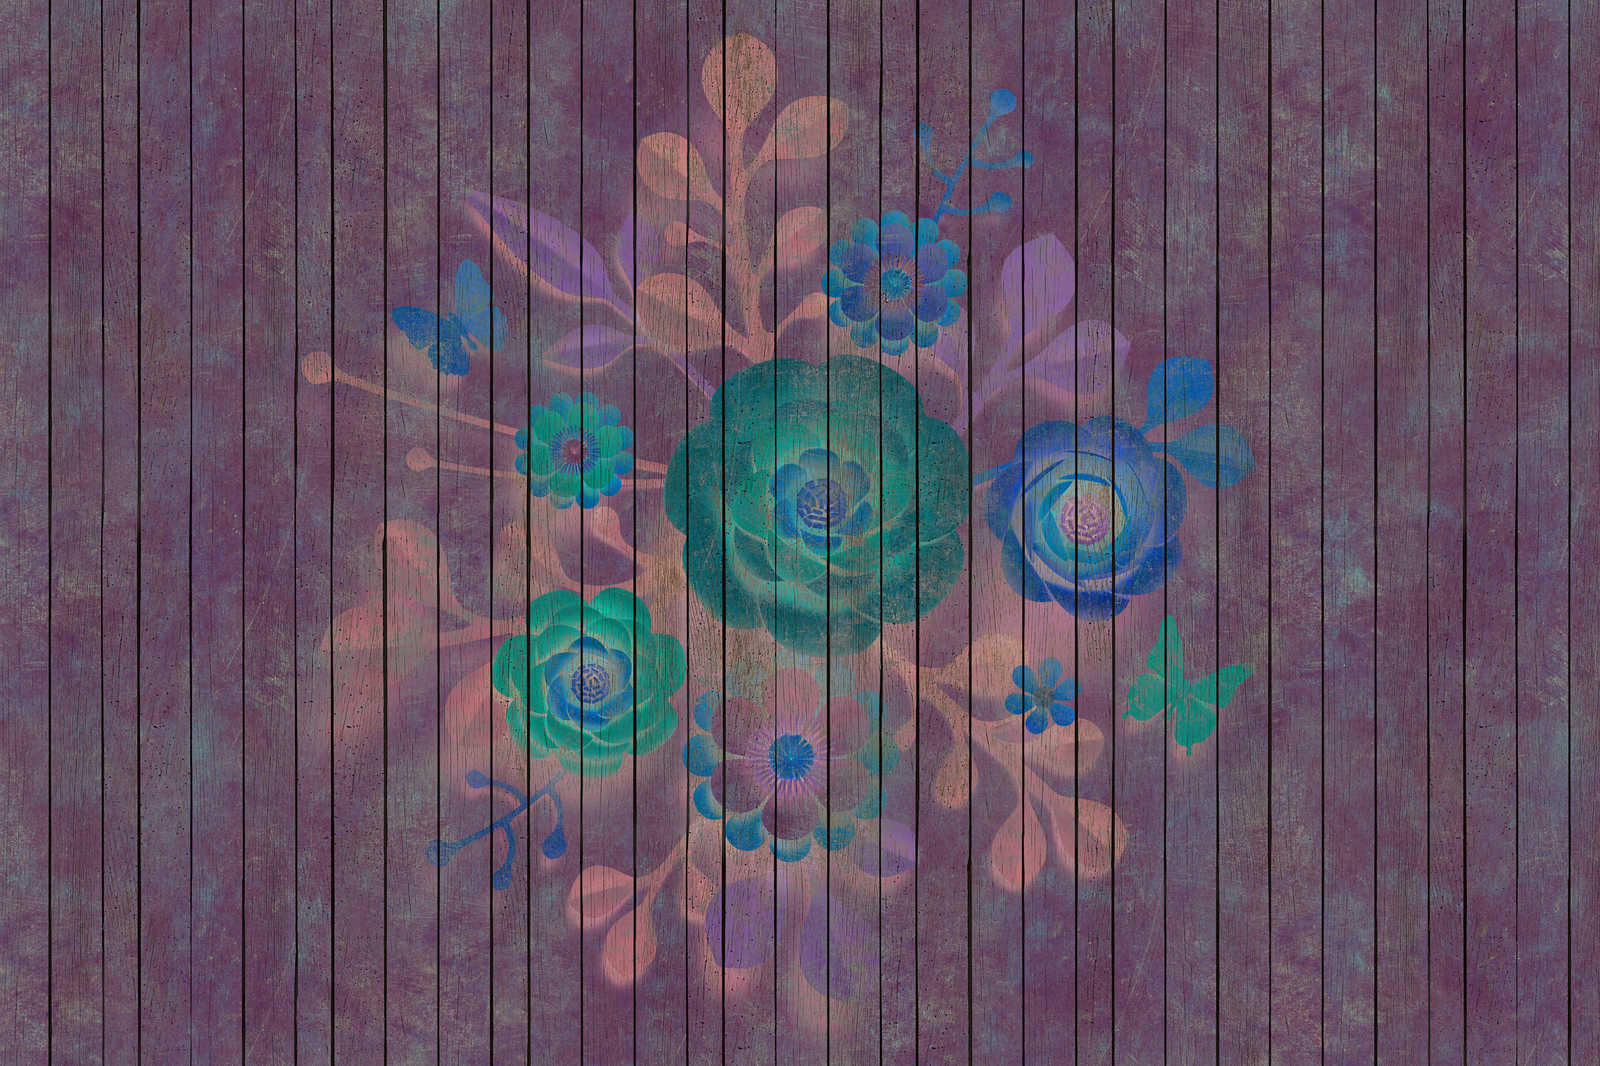             Spray Bouquet 1 - Leinwandbild mit Blumen auf Bretterwand - Holpaneele breit – 0,90 m x 0,60 m
        